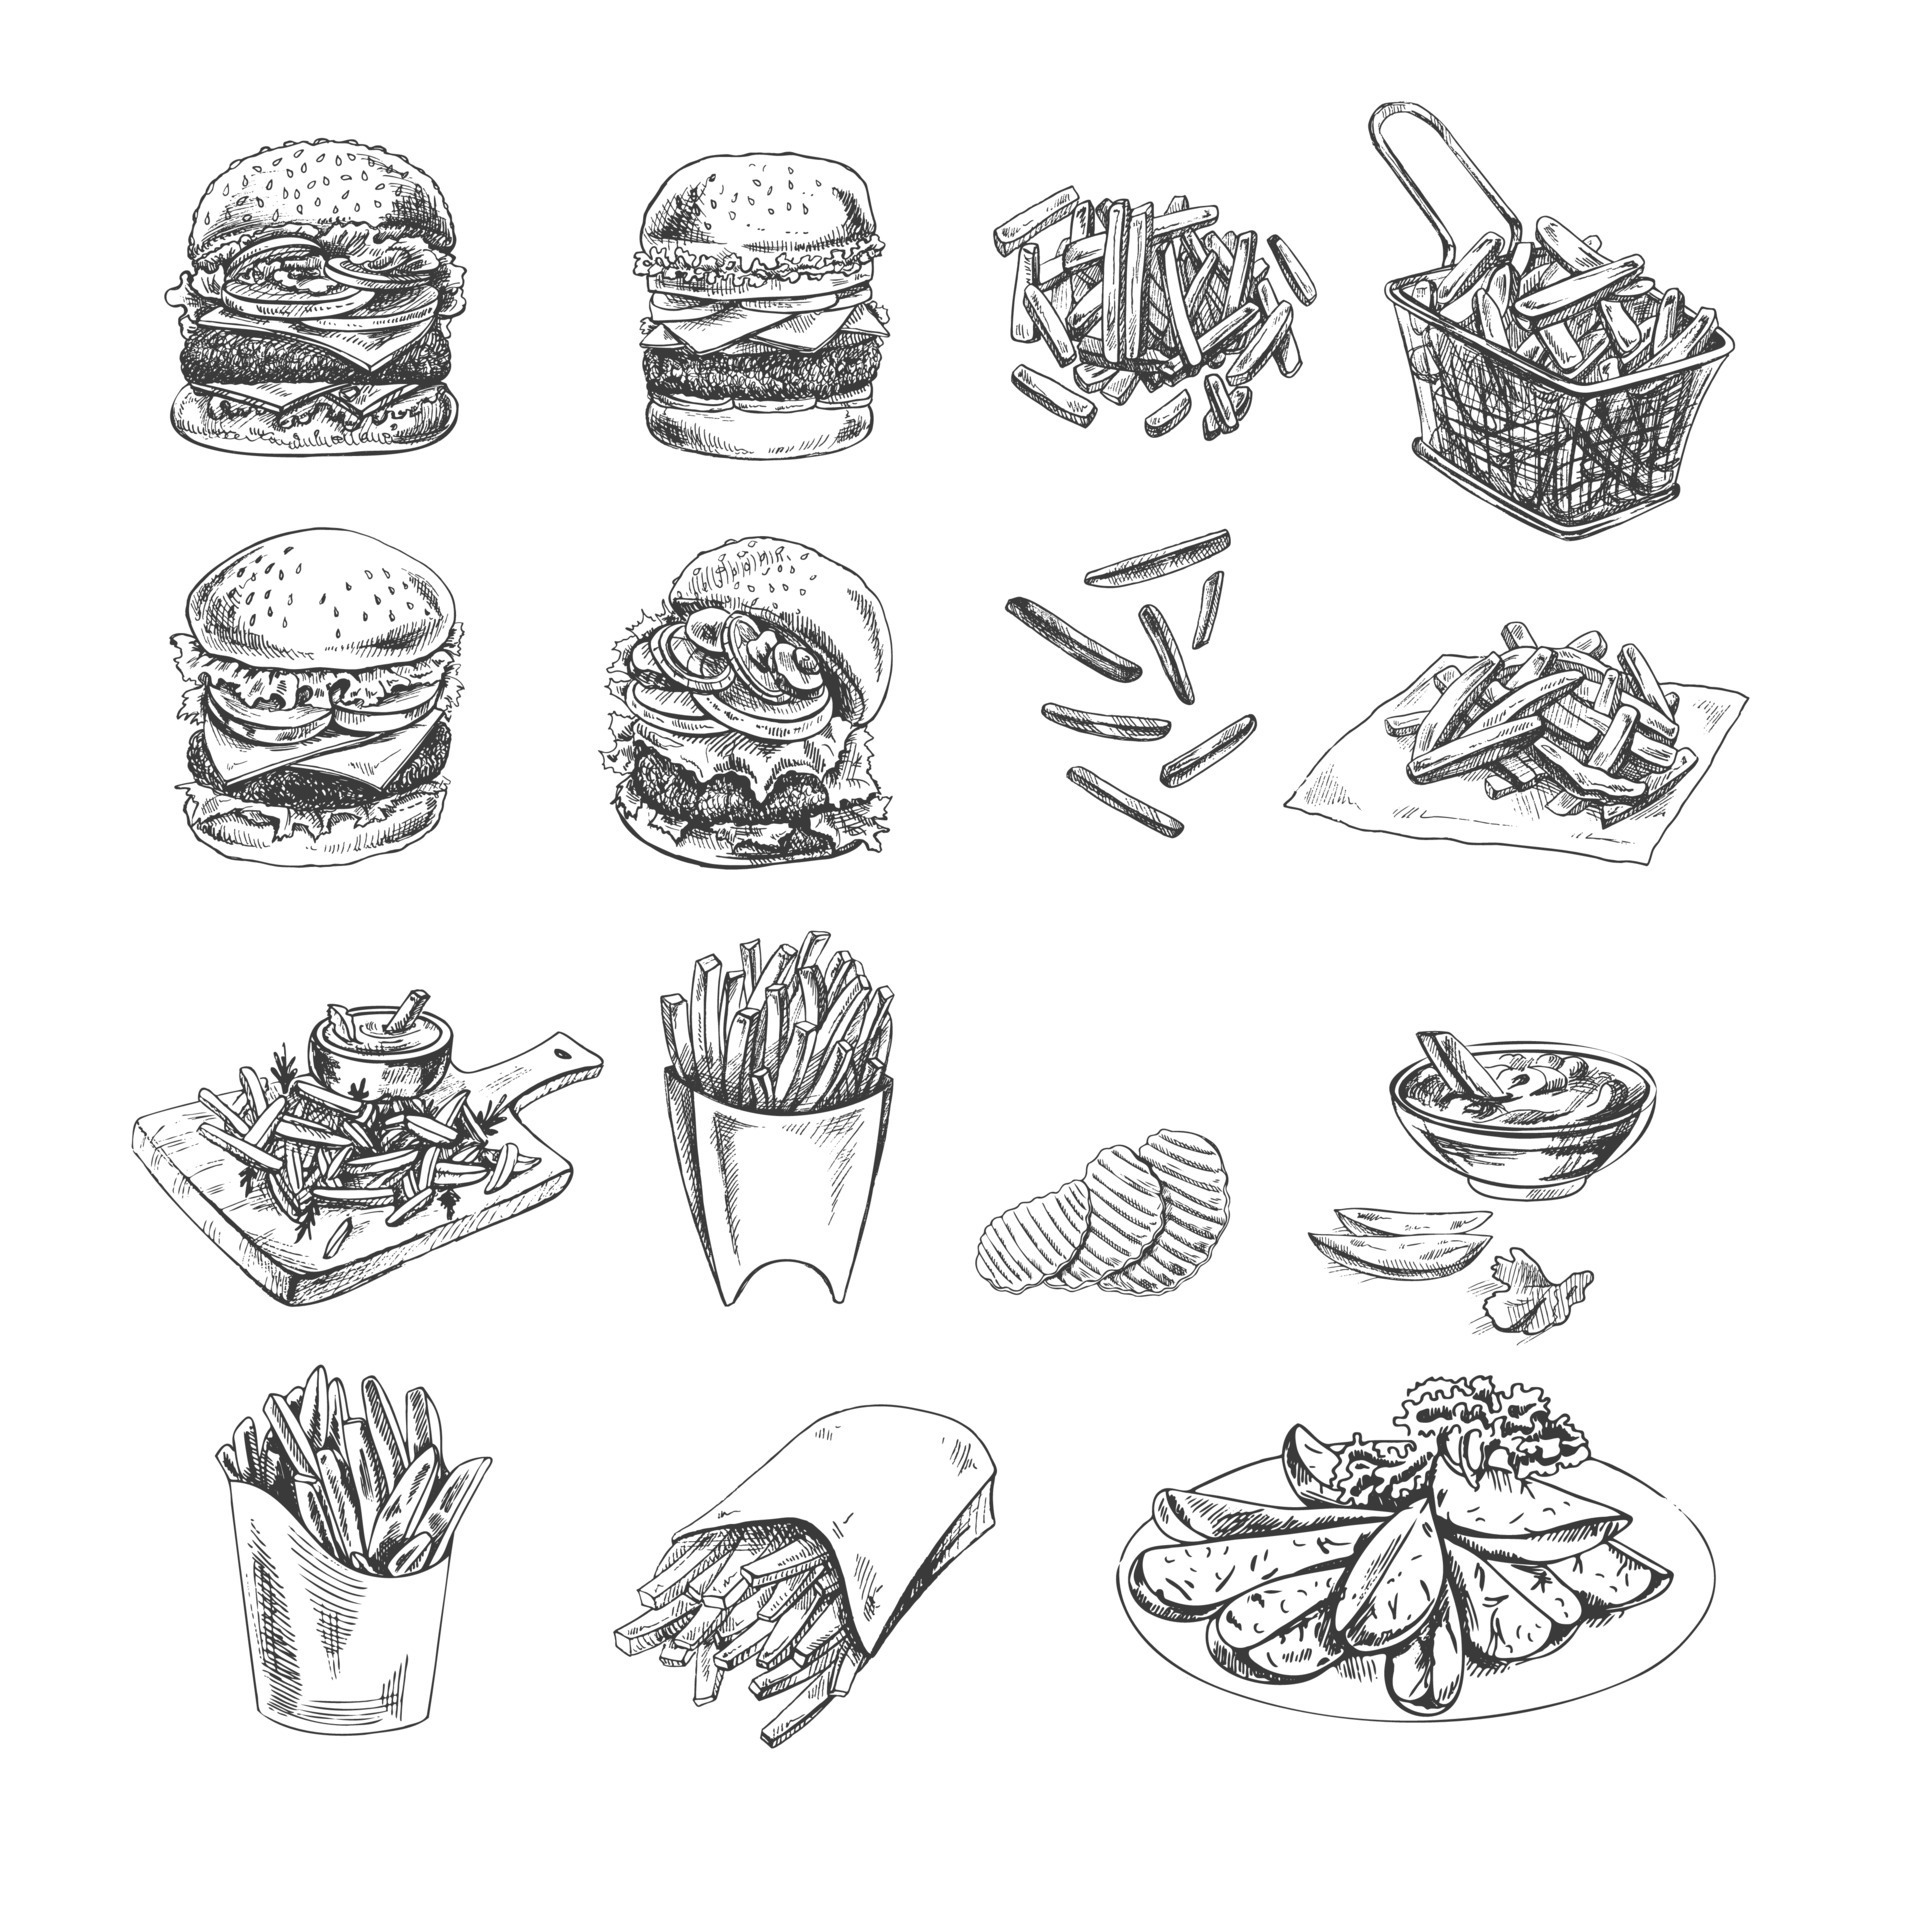 470700 Food Sketch Stock Photos Pictures  RoyaltyFree Images  iStock   Asian food sketch Food sketch background Healthy food sketch